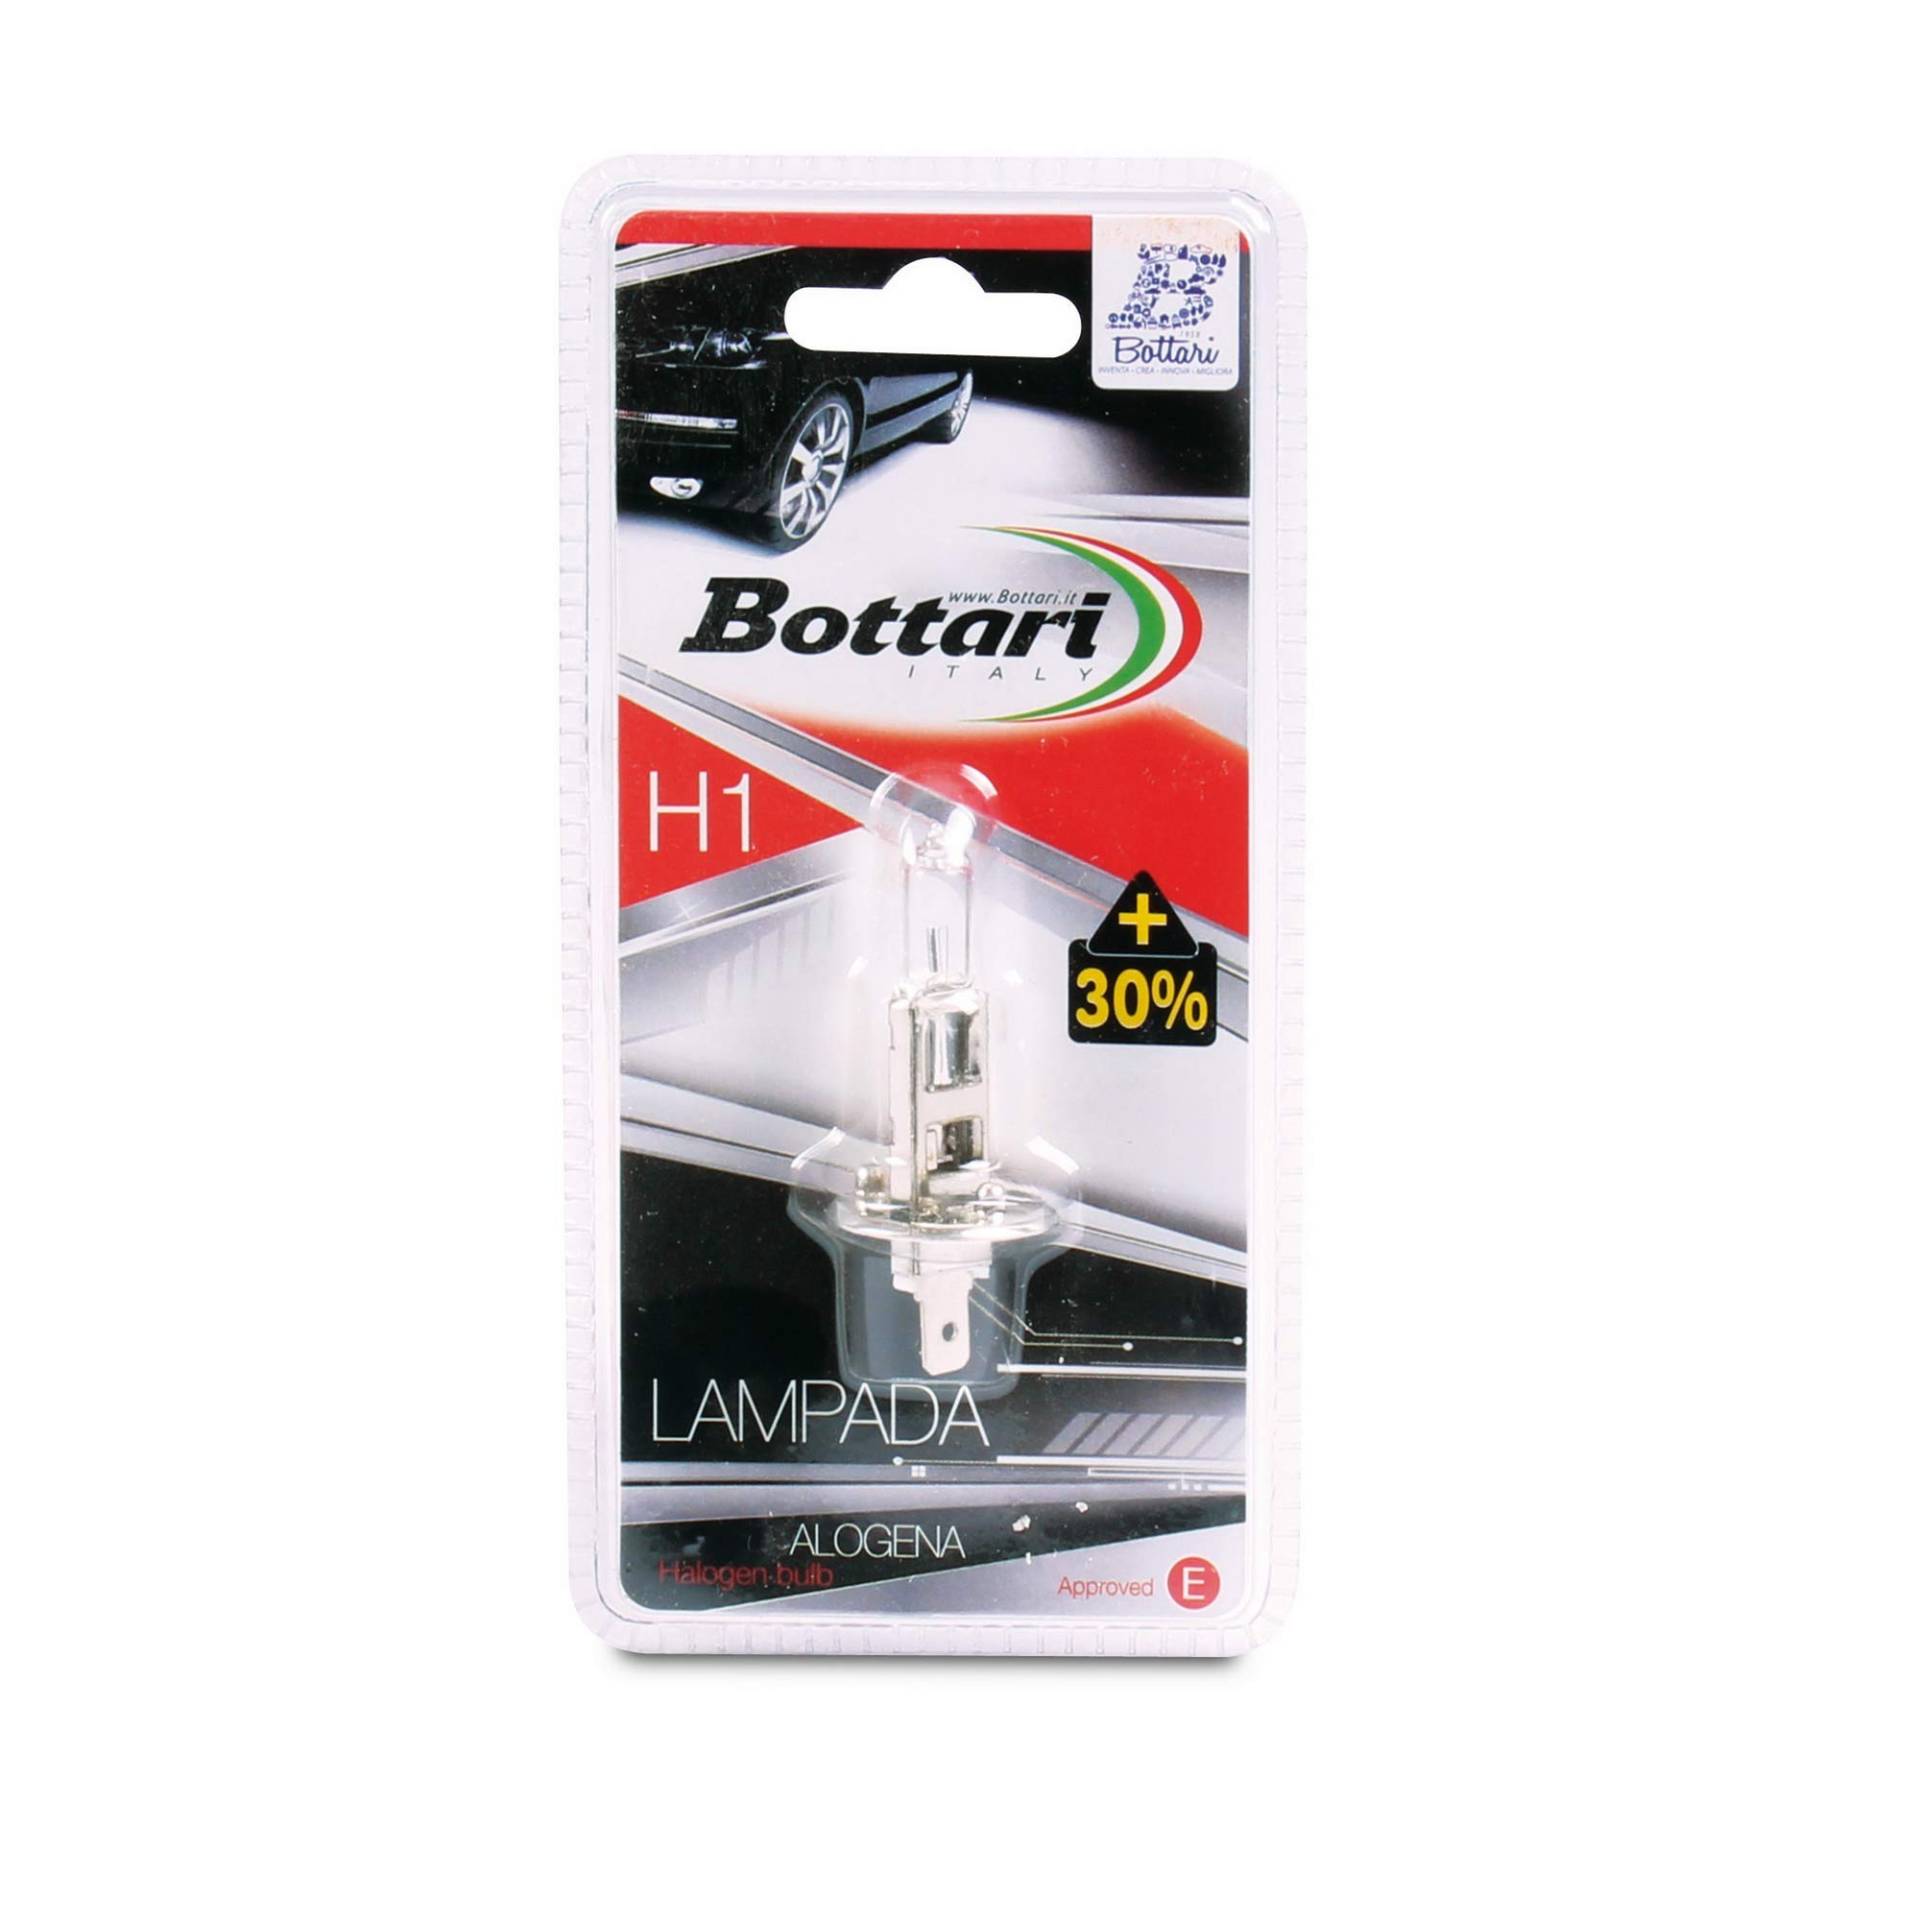 Bottari SpA 30562 H1 Halogenlampe 12 V, 55 W von Bottari SpA